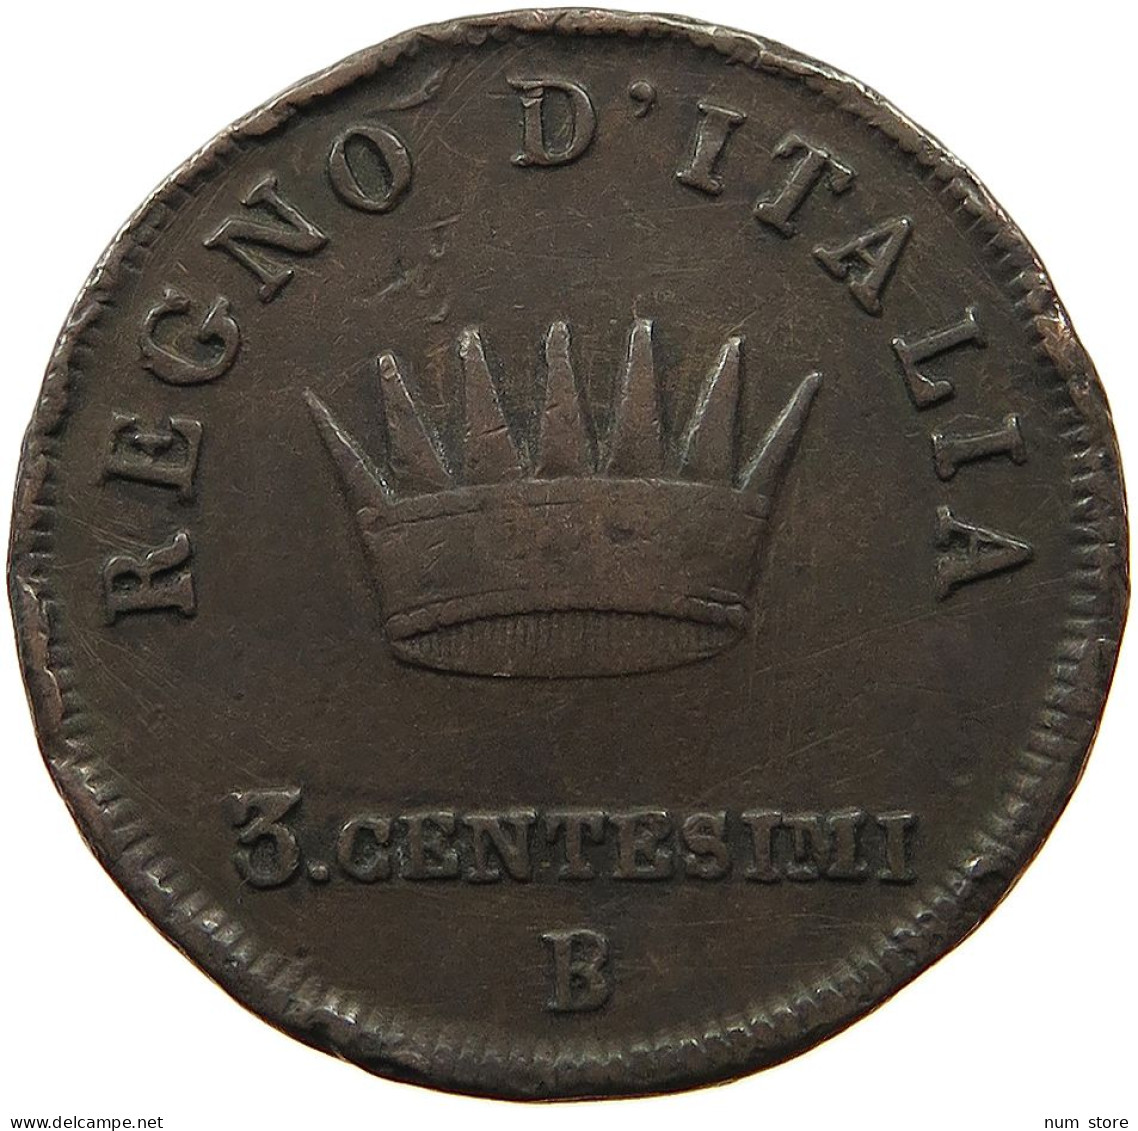 ITALY STATES NAPOLEON I. 3 CENTESIMI 1810/09 B Napoleon I. (1804-1814, 1815) #t060 0455 - Napoleonic